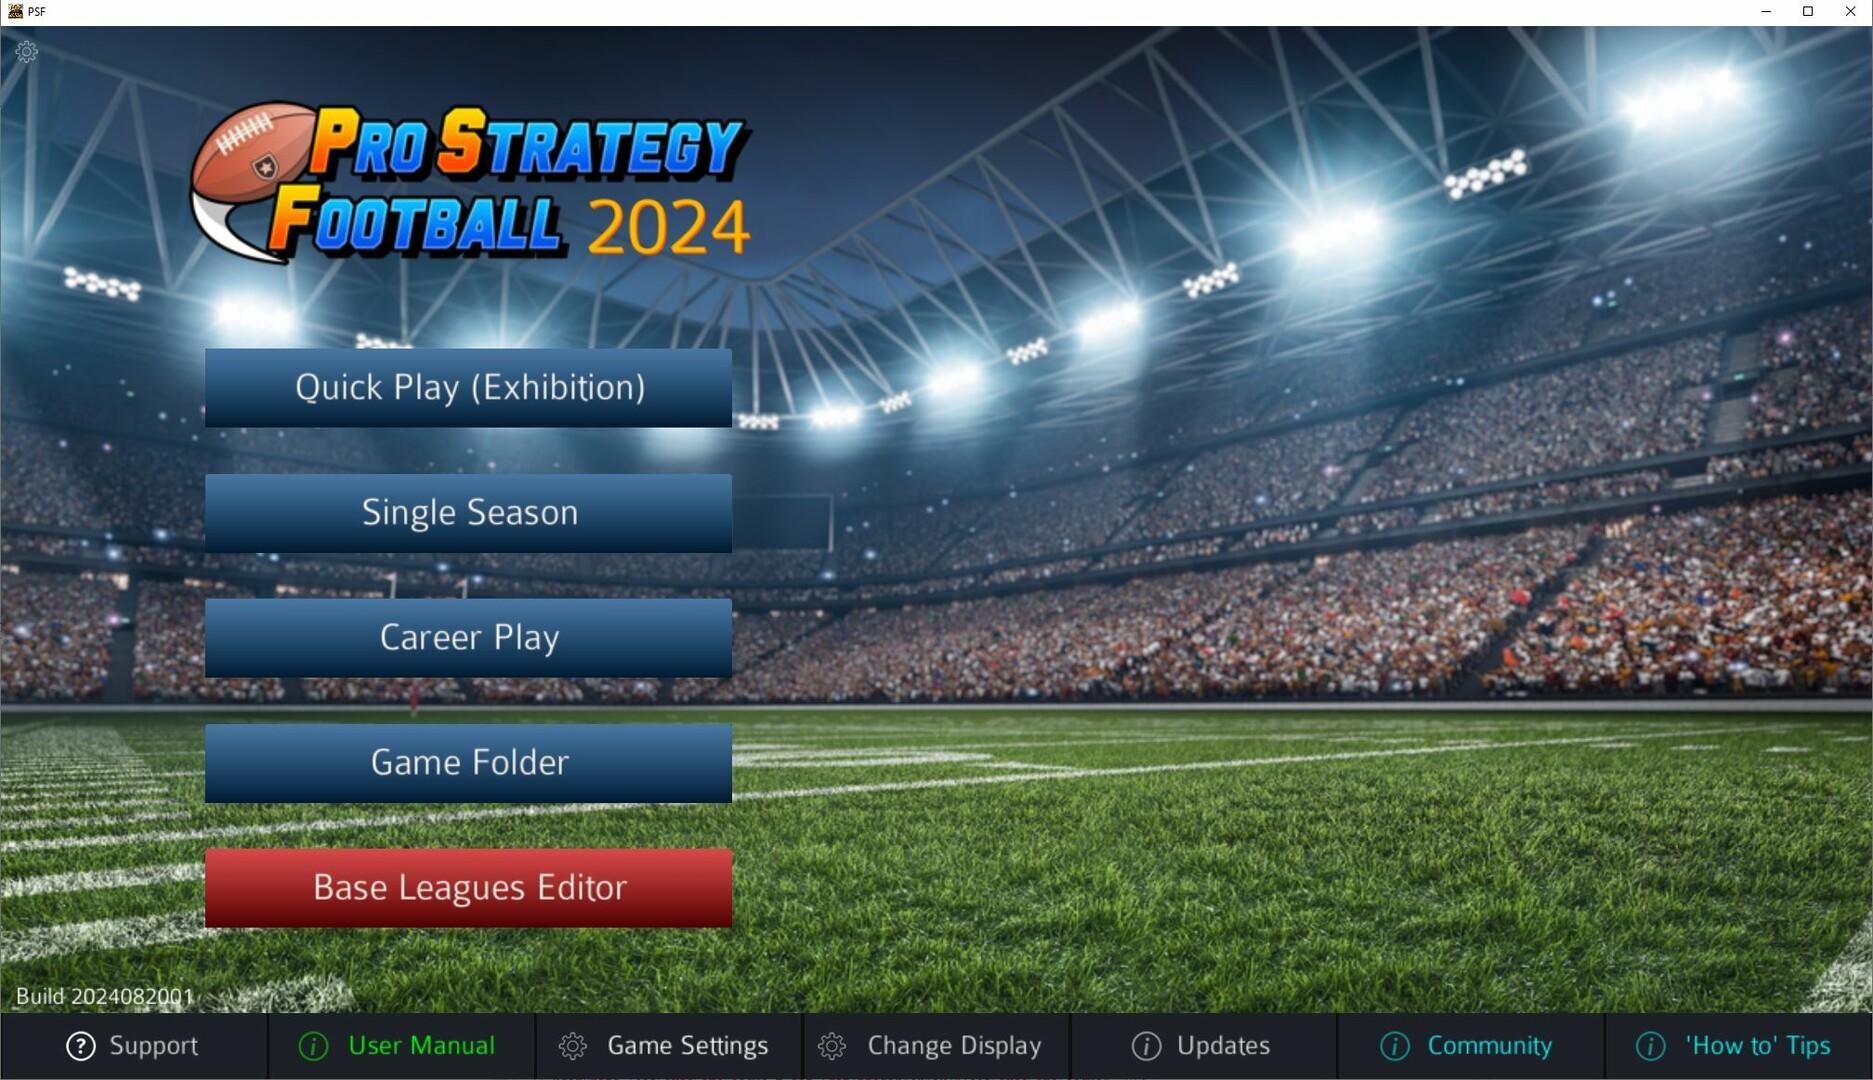 Screenshot 1 of プロ ストラテジー フットボール 2024 